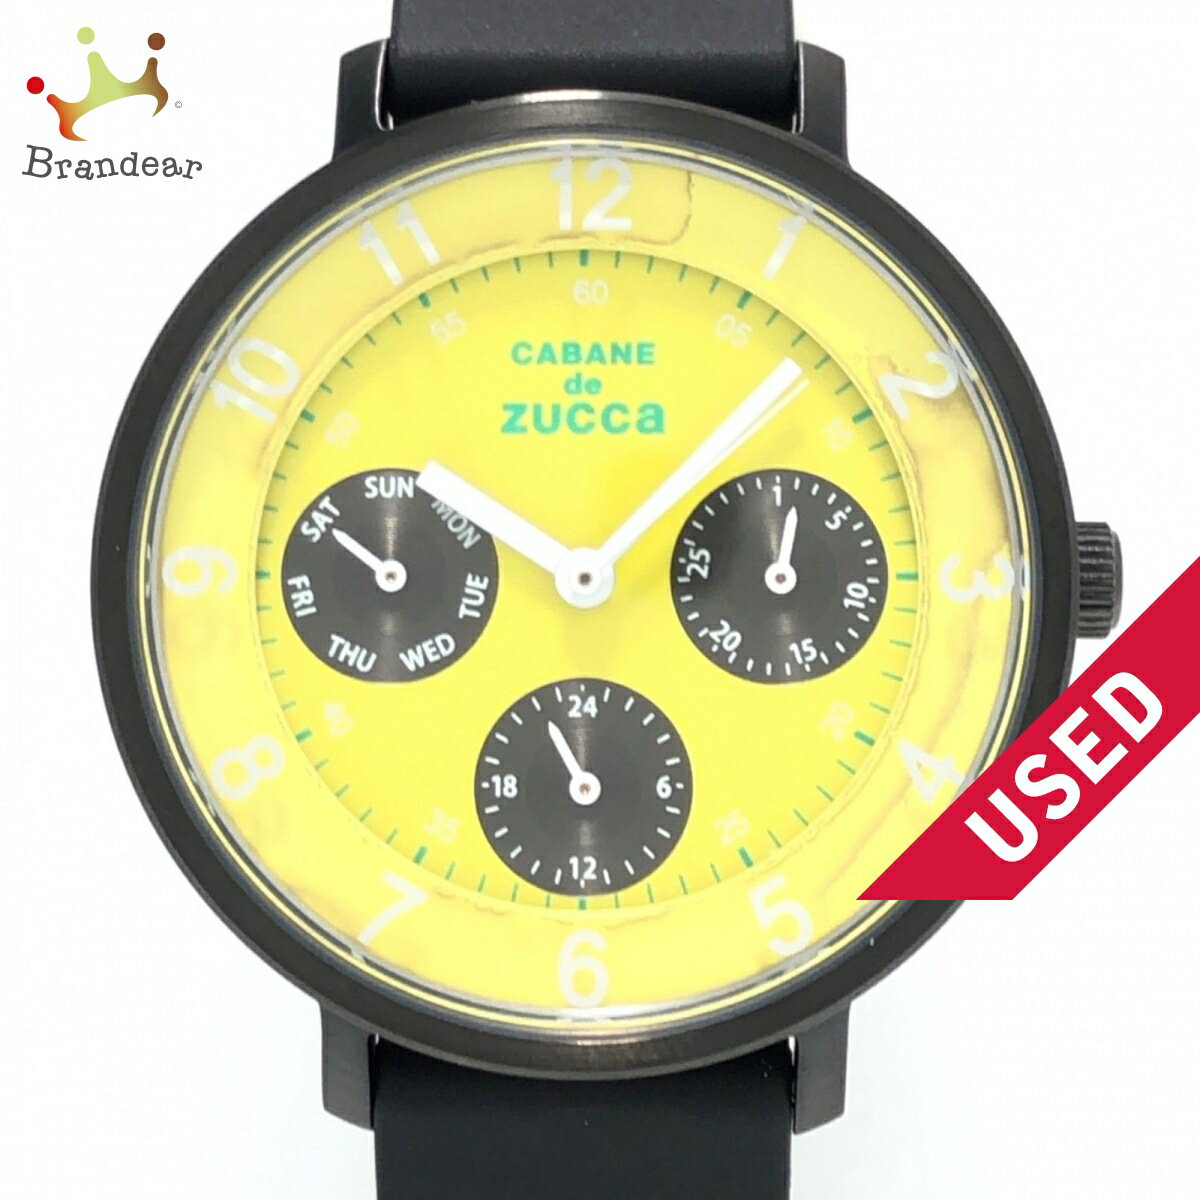 【新着】【中古】ZUCCA(ズッカ) 腕時計 CABANE de zucca 黒×イエロー